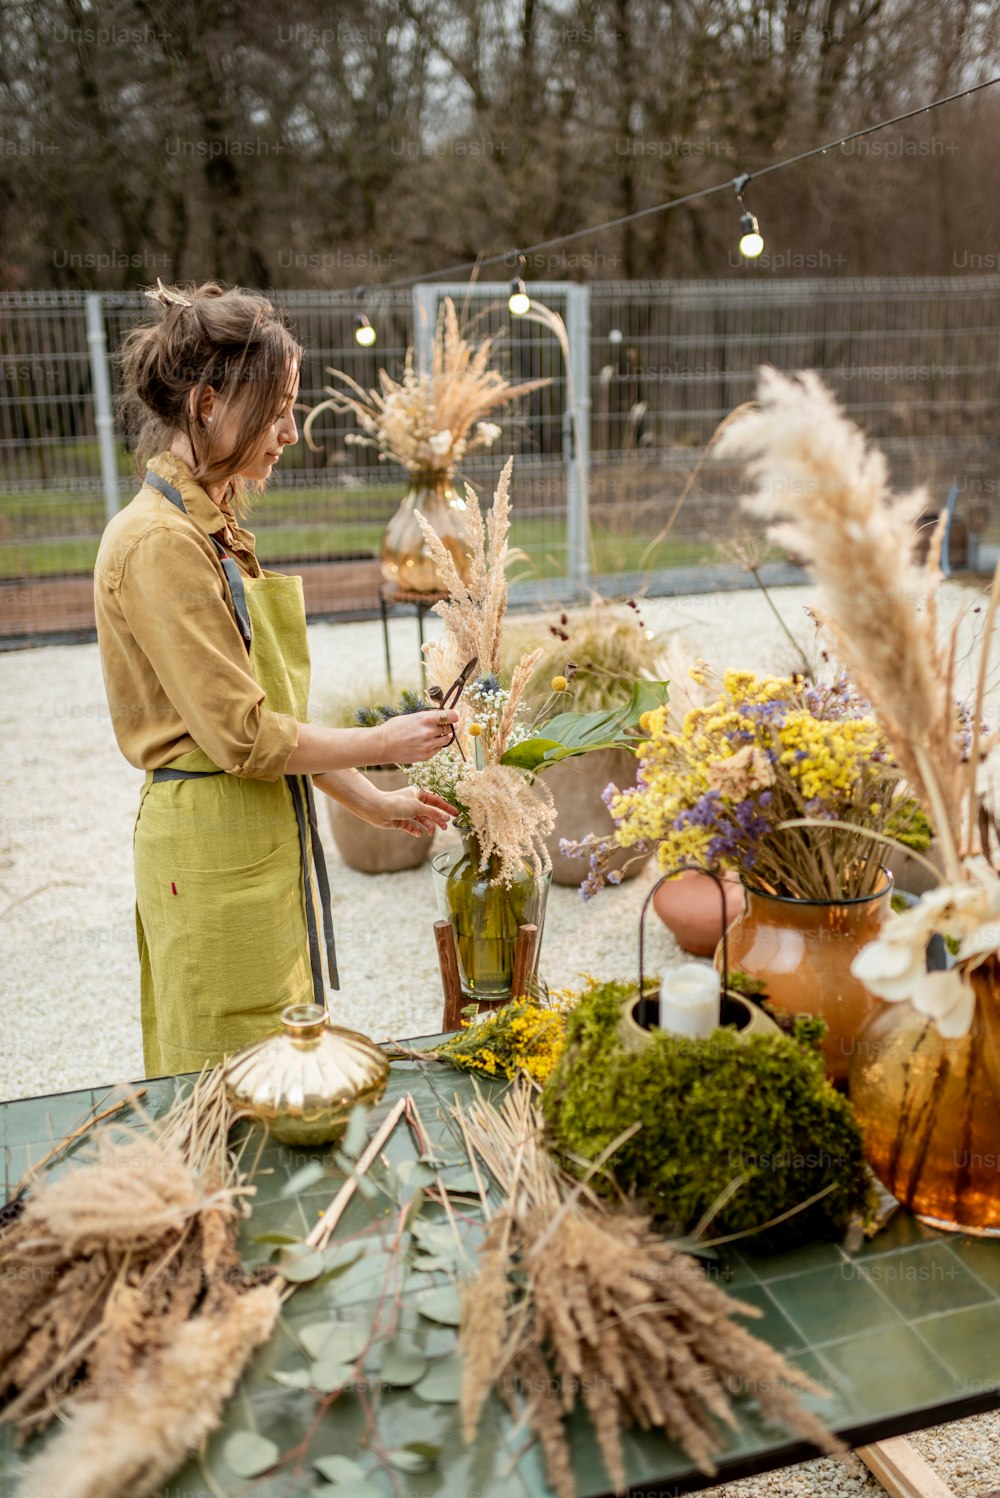 Mujer joven haciendo composiciones de flores y hierbas secas y frescas en el taller al aire libre. Florista, jardinero o decorador que compone decoración floral